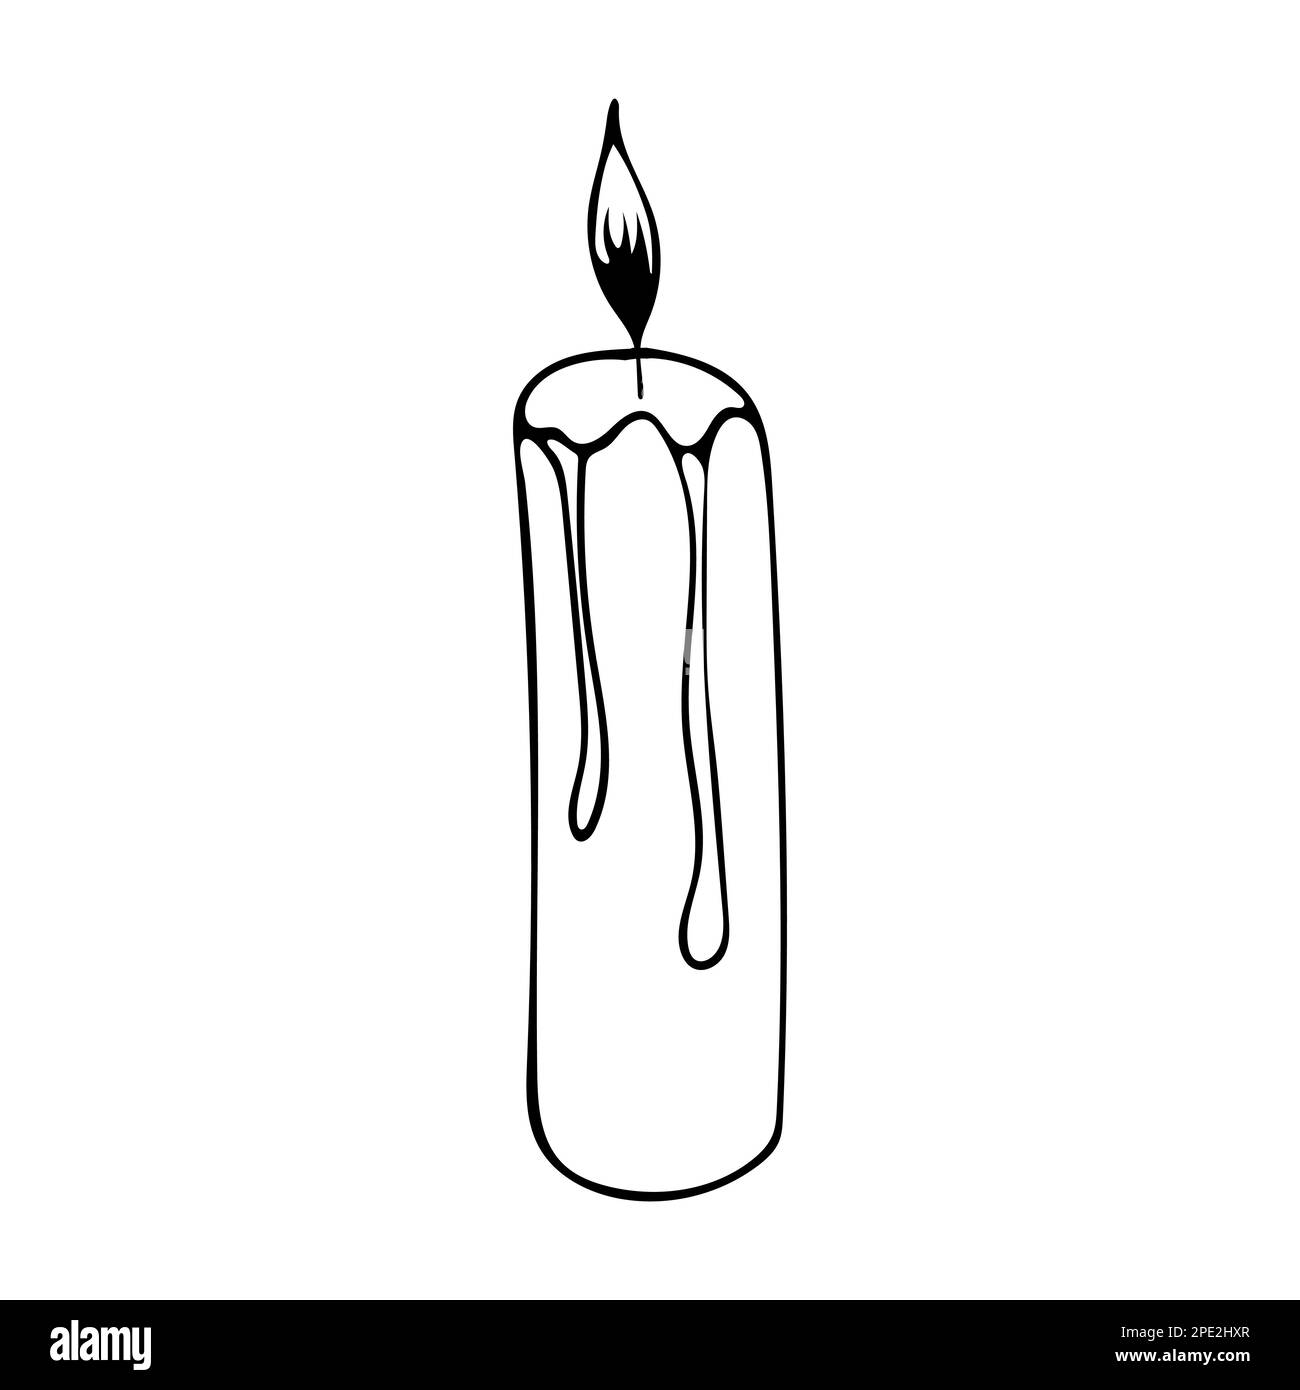 Illustrazione vettoriale candela disegnata a mano con platessa bruciante Illustrazione Vettoriale